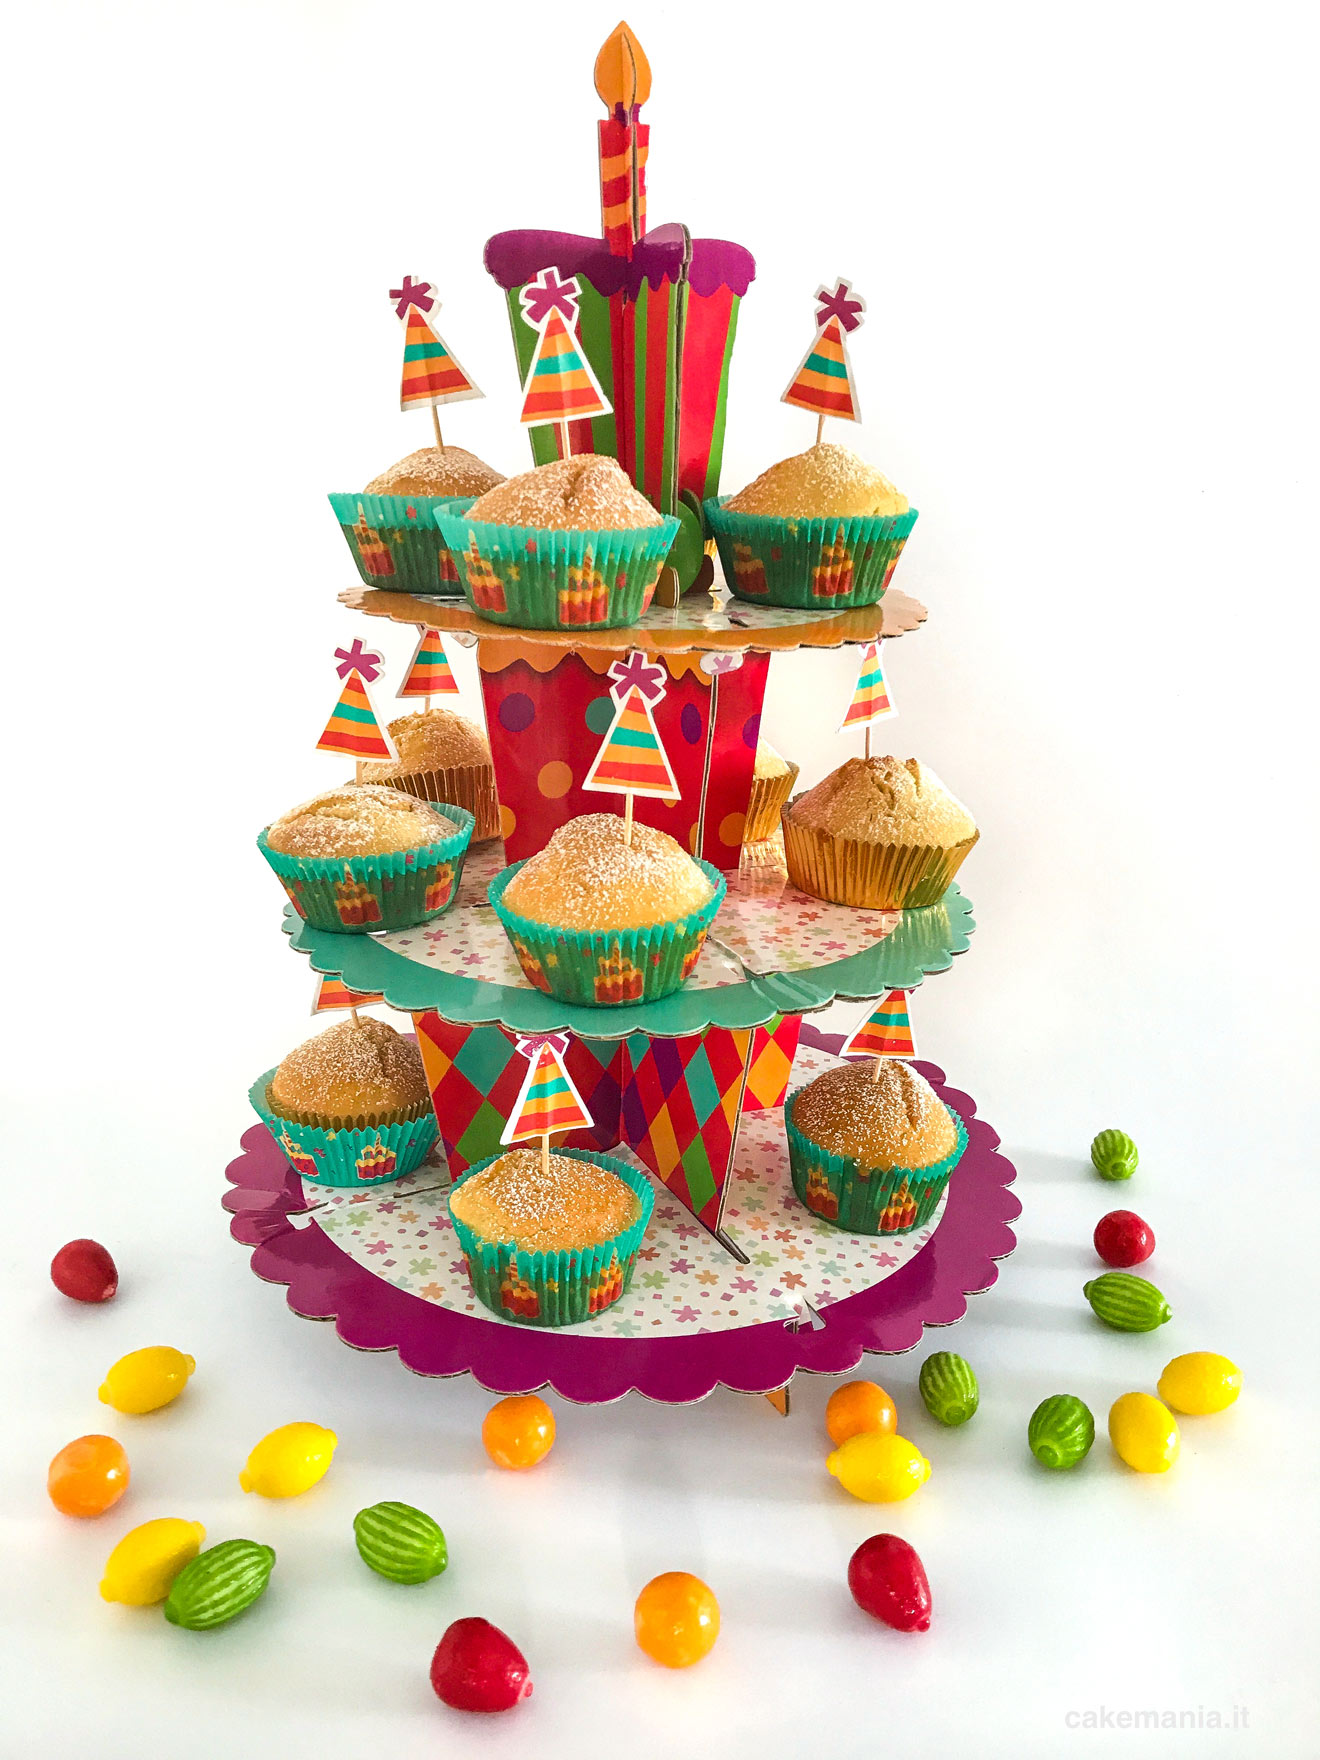 Decorazioni torte compleanno bambini - Topper torte facile decoro